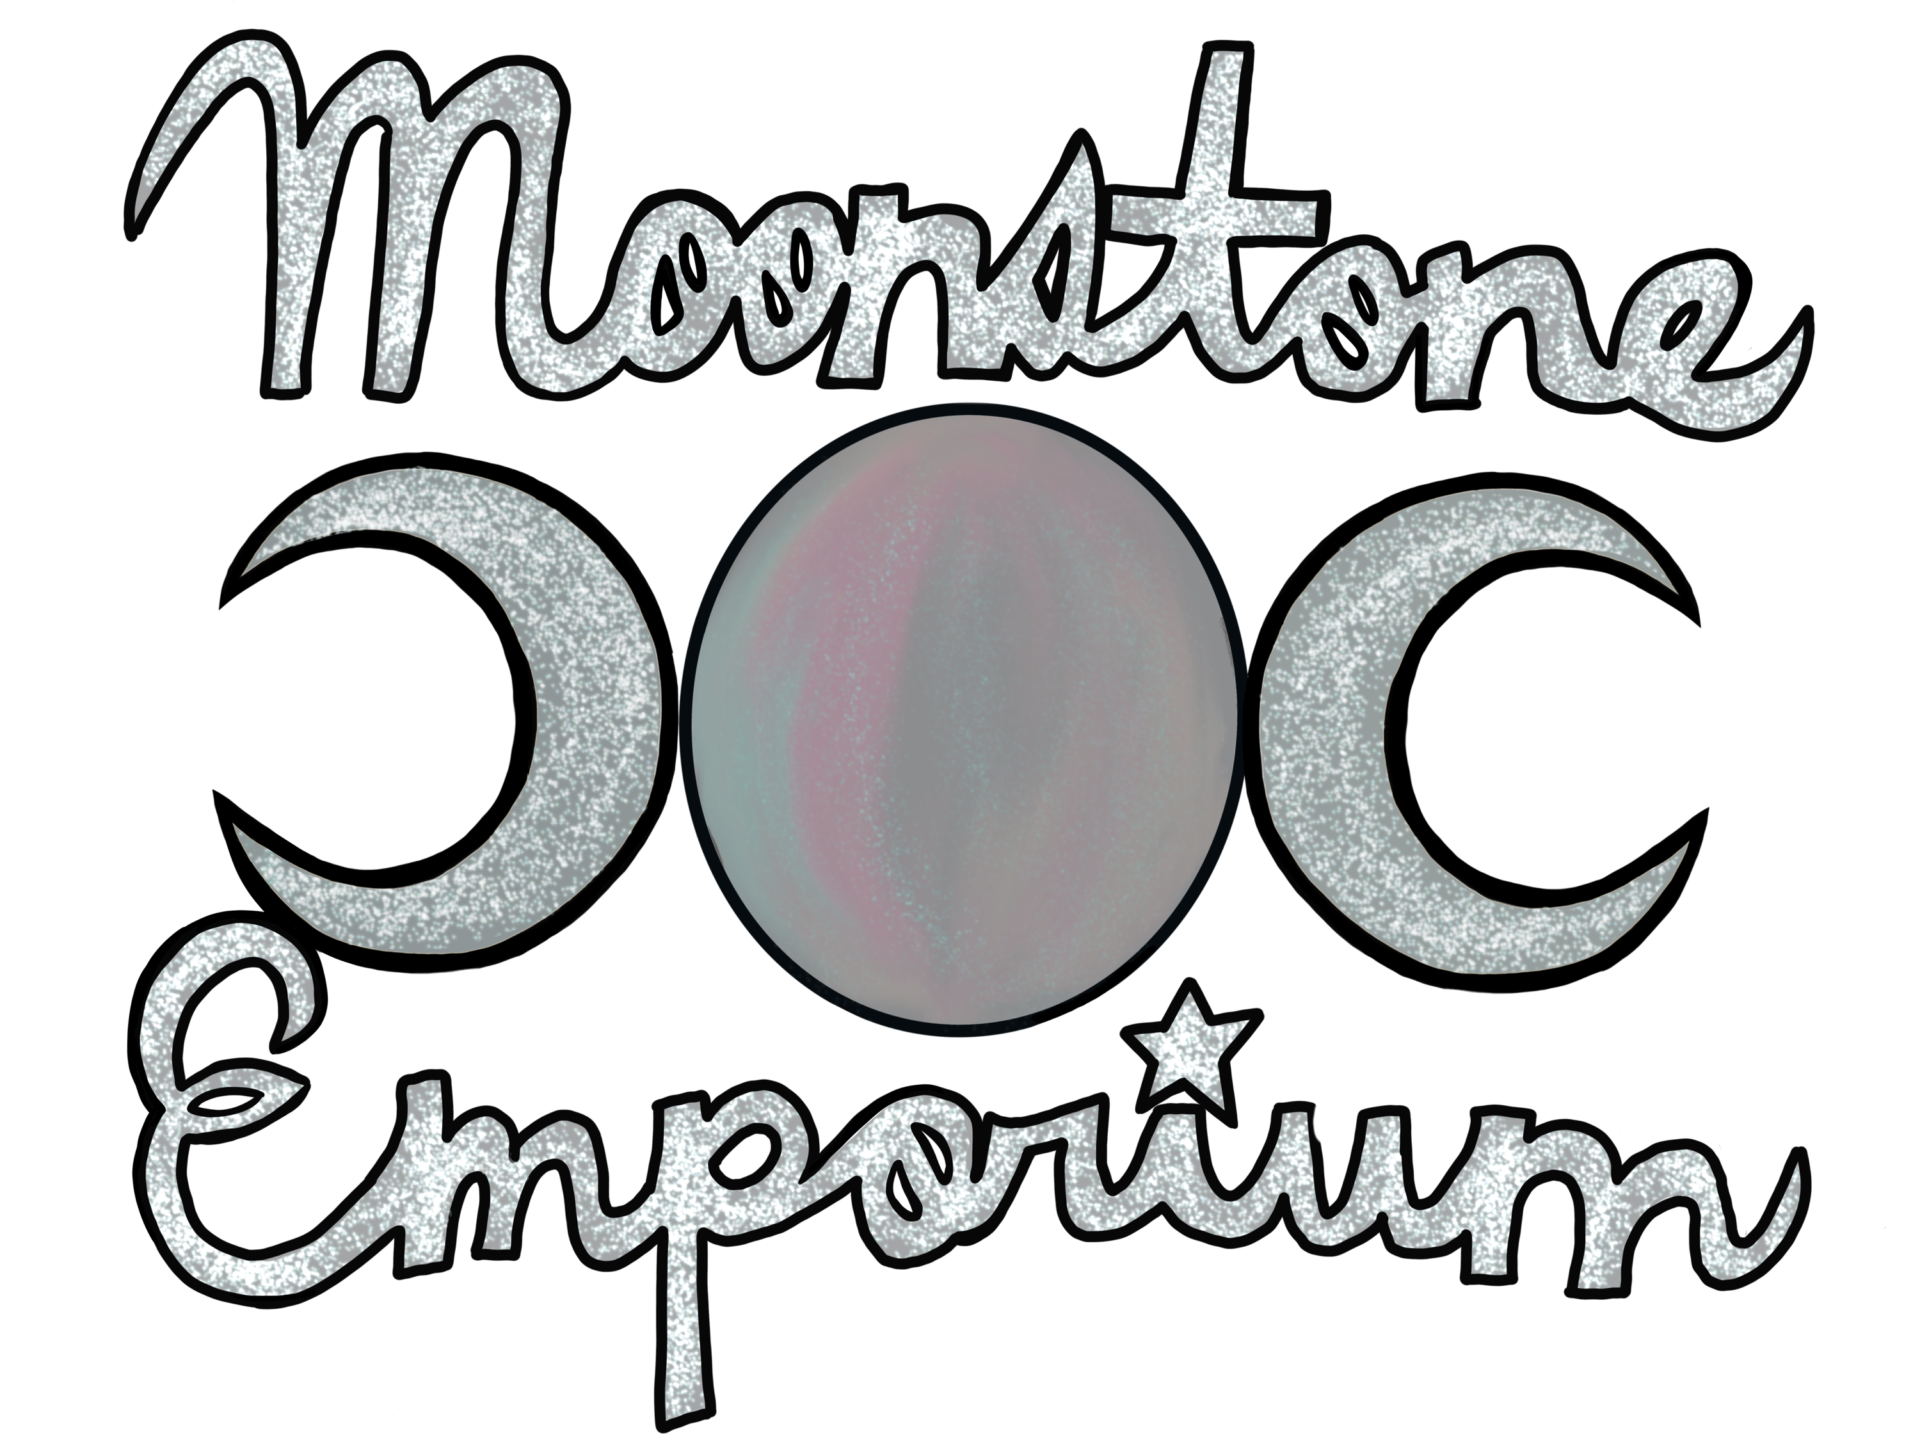 Moonstone Emporium